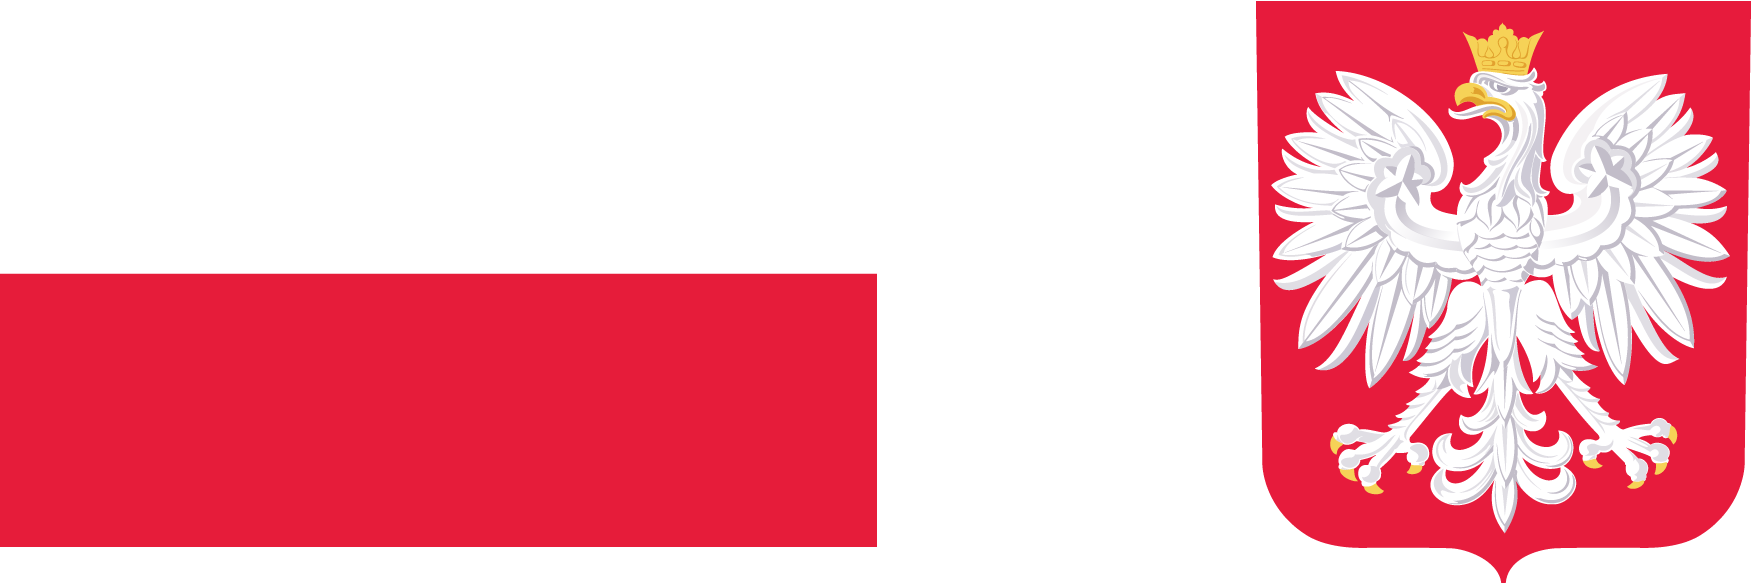 Baner przedstawiający z lewej strony flagę Polski, a z prawej strony godło Polski.